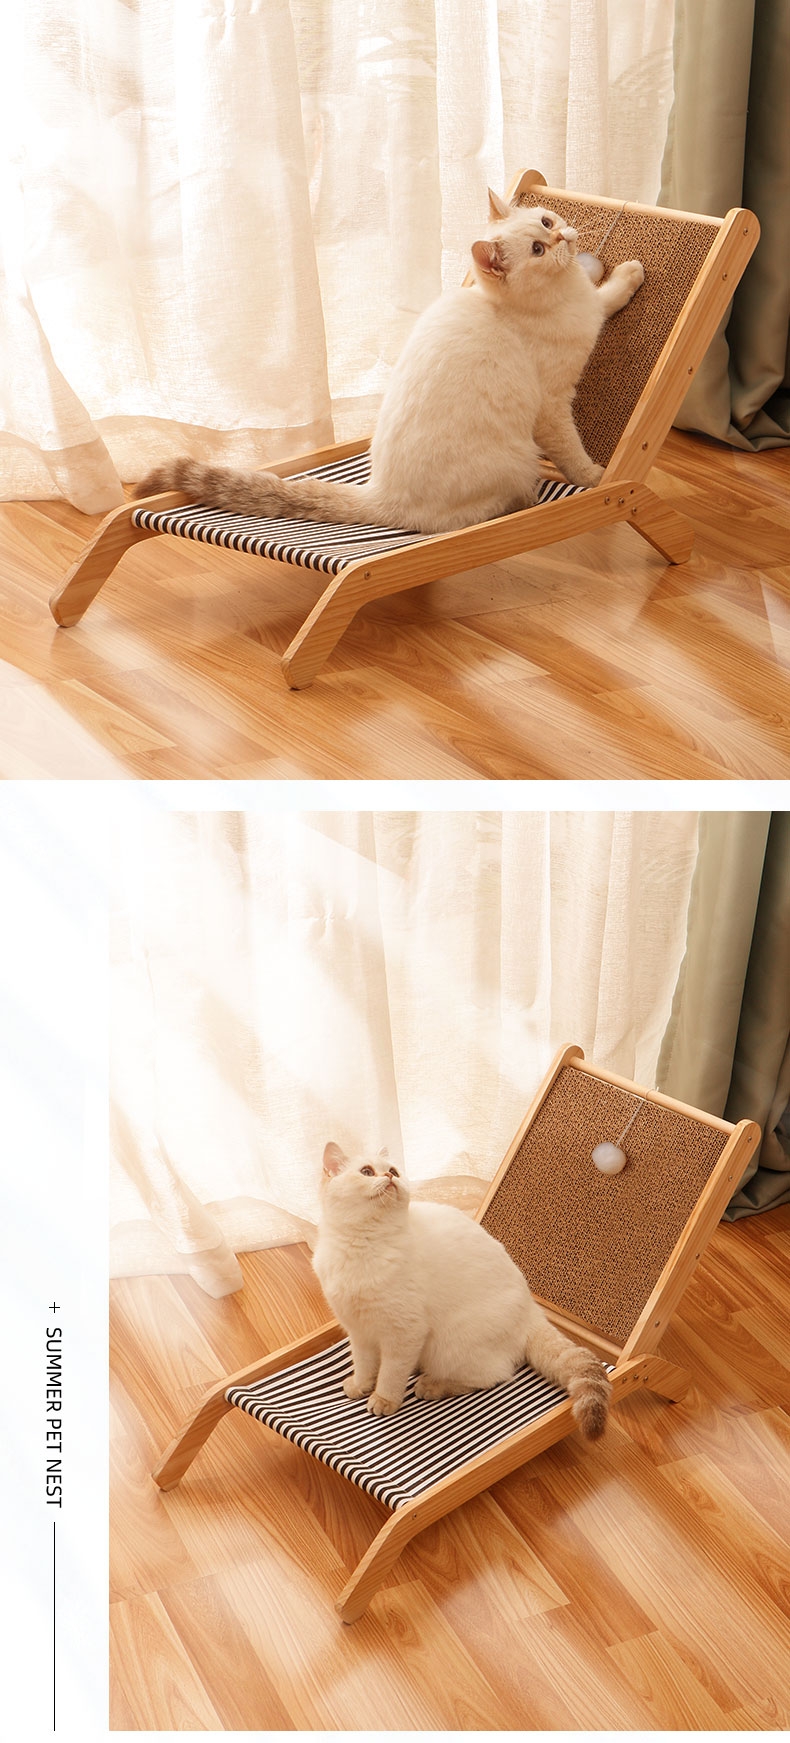 多可特 沙滩椅造型猫抓板 可躺可磨爪